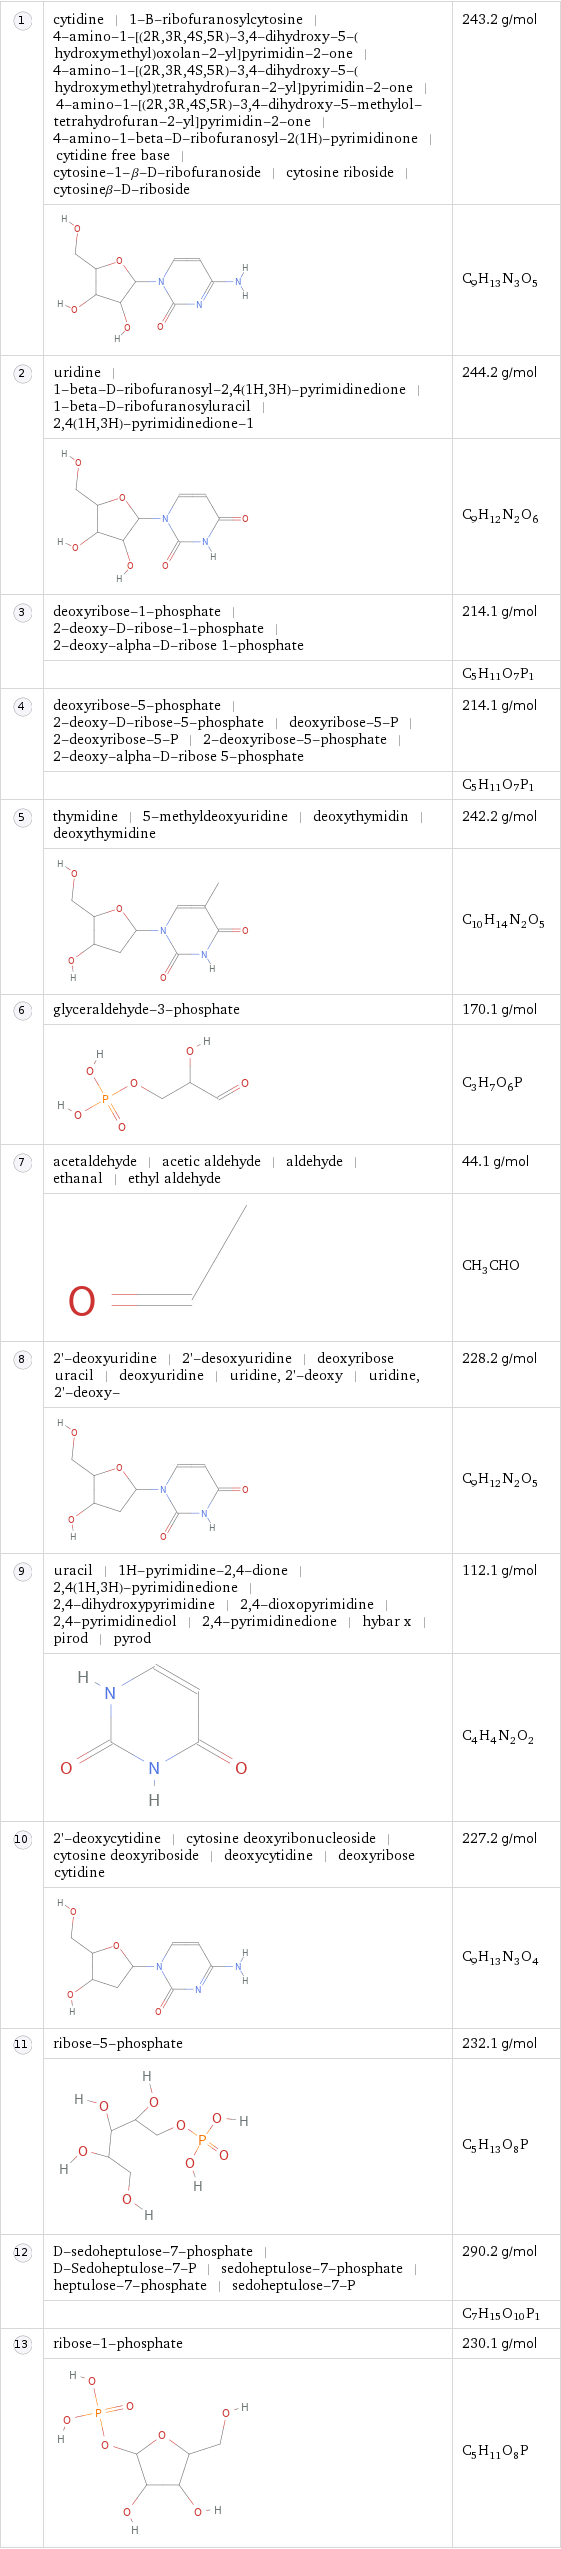  | cytidine | 1-B-ribofuranosylcytosine | 4-amino-1-[(2R, 3R, 4S, 5R)-3, 4-dihydroxy-5-(hydroxymethyl)oxolan-2-yl]pyrimidin-2-one | 4-amino-1-[(2R, 3R, 4S, 5R)-3, 4-dihydroxy-5-(hydroxymethyl)tetrahydrofuran-2-yl]pyrimidin-2-one | 4-amino-1-[(2R, 3R, 4S, 5R)-3, 4-dihydroxy-5-methylol-tetrahydrofuran-2-yl]pyrimidin-2-one | 4-amino-1-beta-D-ribofuranosyl-2(1H)-pyrimidinone | cytidine free base | cytosine-1-β-D-ribofuranoside | cytosine riboside | cytosineβ-D-riboside | 243.2 g/mol  | | C_9H_13N_3O_5  | uridine | 1-beta-D-ribofuranosyl-2, 4(1H, 3H)-pyrimidinedione | 1-beta-D-ribofuranosyluracil | 2, 4(1H, 3H)-pyrimidinedione-1 | 244.2 g/mol  | | C_9H_12N_2O_6  | deoxyribose-1-phosphate | 2-deoxy-D-ribose-1-phosphate | 2-deoxy-alpha-D-ribose 1-phosphate | 214.1 g/mol  | | C_5H_11O_7P_1  | deoxyribose-5-phosphate | 2-deoxy-D-ribose-5-phosphate | deoxyribose-5-P | 2-deoxyribose-5-P | 2-deoxyribose-5-phosphate | 2-deoxy-alpha-D-ribose 5-phosphate | 214.1 g/mol  | | C_5H_11O_7P_1  | thymidine | 5-methyldeoxyuridine | deoxythymidin | deoxythymidine | 242.2 g/mol  | | C_10H_14N_2O_5  | glyceraldehyde-3-phosphate | 170.1 g/mol  | | C_3H_7O_6P  | acetaldehyde | acetic aldehyde | aldehyde | ethanal | ethyl aldehyde | 44.1 g/mol  | | CH_3CHO  | 2'-deoxyuridine | 2'-desoxyuridine | deoxyribose uracil | deoxyuridine | uridine, 2'-deoxy | uridine, 2'-deoxy- | 228.2 g/mol  | | C_9H_12N_2O_5  | uracil | 1H-pyrimidine-2, 4-dione | 2, 4(1H, 3H)-pyrimidinedione | 2, 4-dihydroxypyrimidine | 2, 4-dioxopyrimidine | 2, 4-pyrimidinediol | 2, 4-pyrimidinedione | hybar x | pirod | pyrod | 112.1 g/mol  | | C_4H_4N_2O_2  | 2'-deoxycytidine | cytosine deoxyribonucleoside | cytosine deoxyriboside | deoxycytidine | deoxyribose cytidine | 227.2 g/mol  | | C_9H_13N_3O_4  | ribose-5-phosphate | 232.1 g/mol  | | C_5H_13O_8P  | D-sedoheptulose-7-phosphate | D-Sedoheptulose-7-P | sedoheptulose-7-phosphate | heptulose-7-phosphate | sedoheptulose-7-P | 290.2 g/mol  | | C_7H_15O_10P_1  | ribose-1-phosphate | 230.1 g/mol  | | C_5H_11O_8P